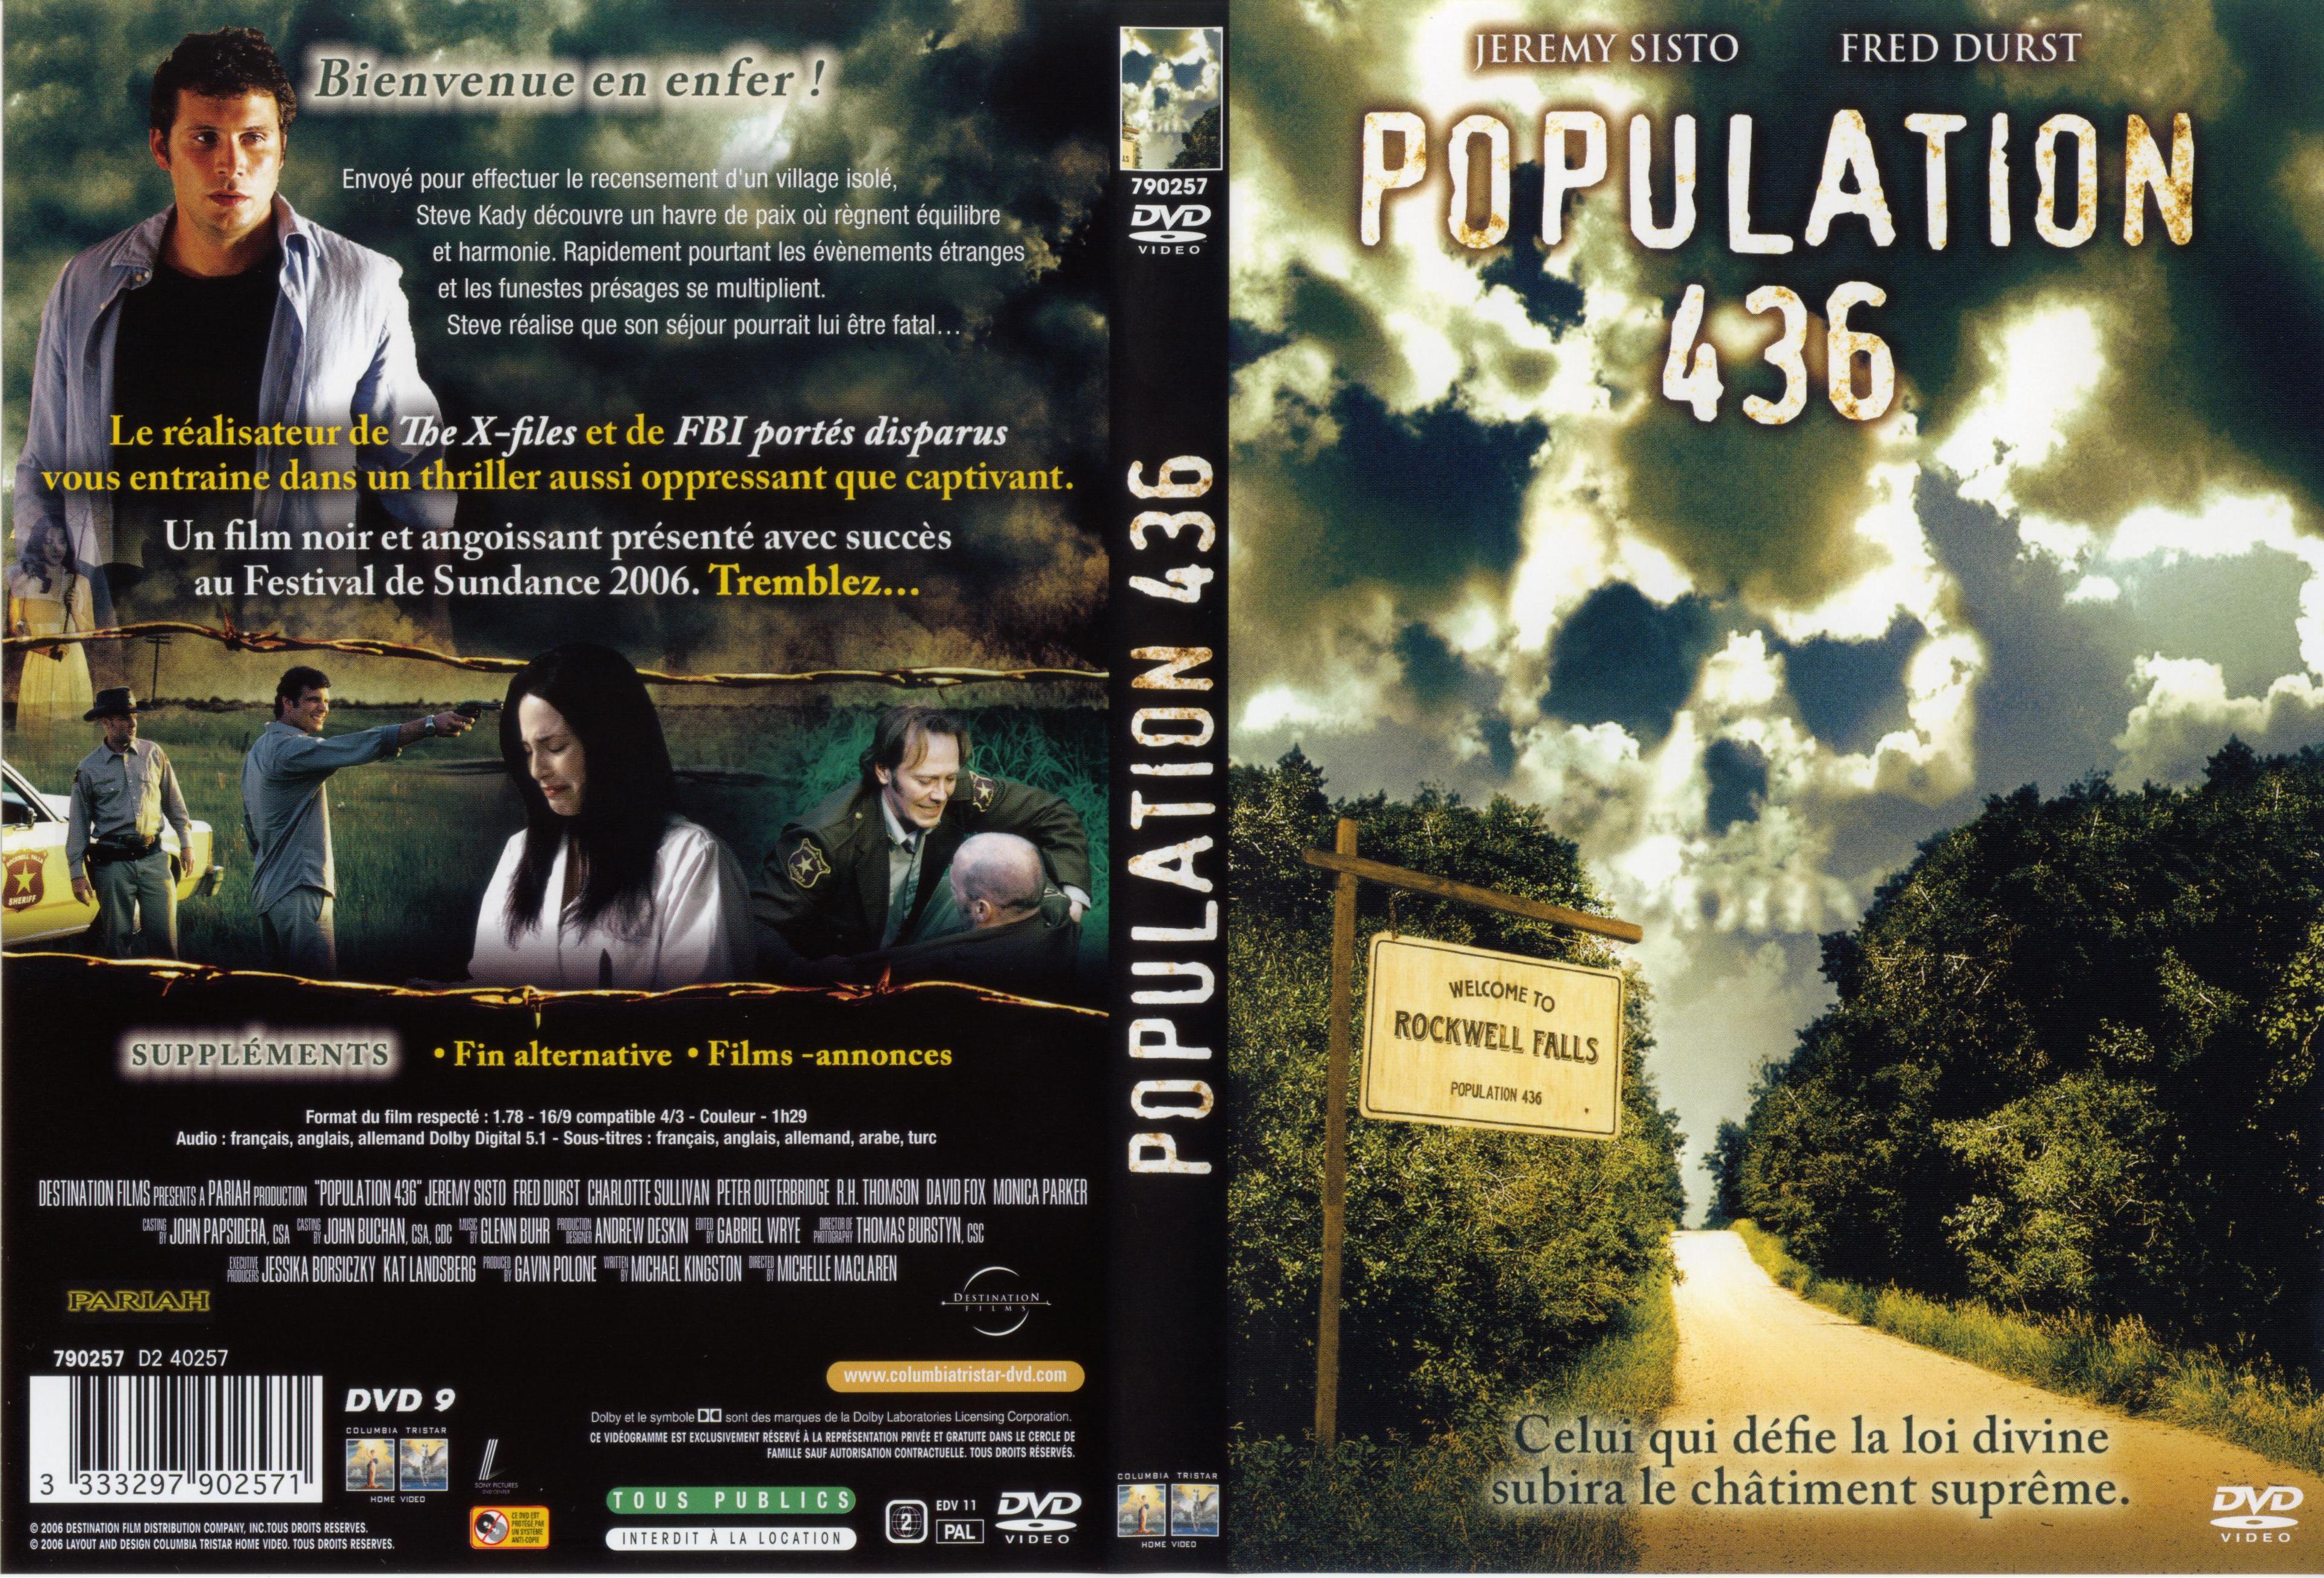 Jaquette DVD Population 436 v2